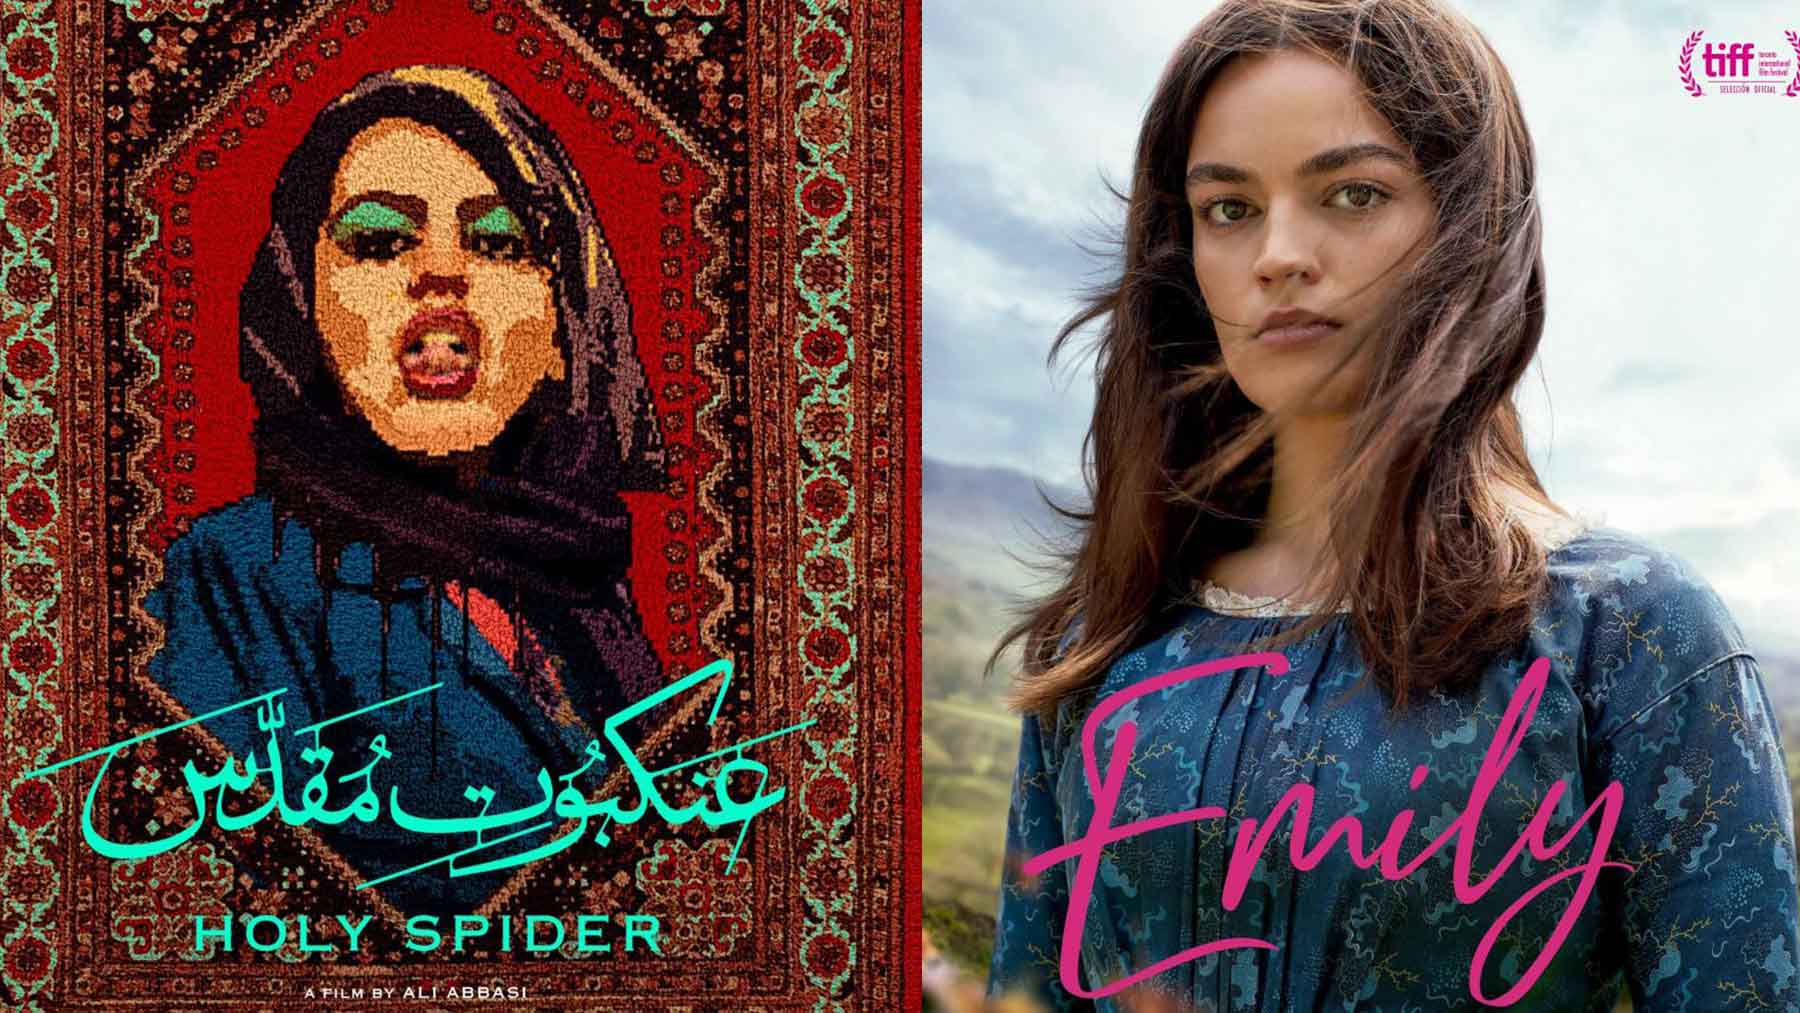 ‘Holy Spider’ y ‘Emily’ son dos de los estrenos más importantes del fin de semana